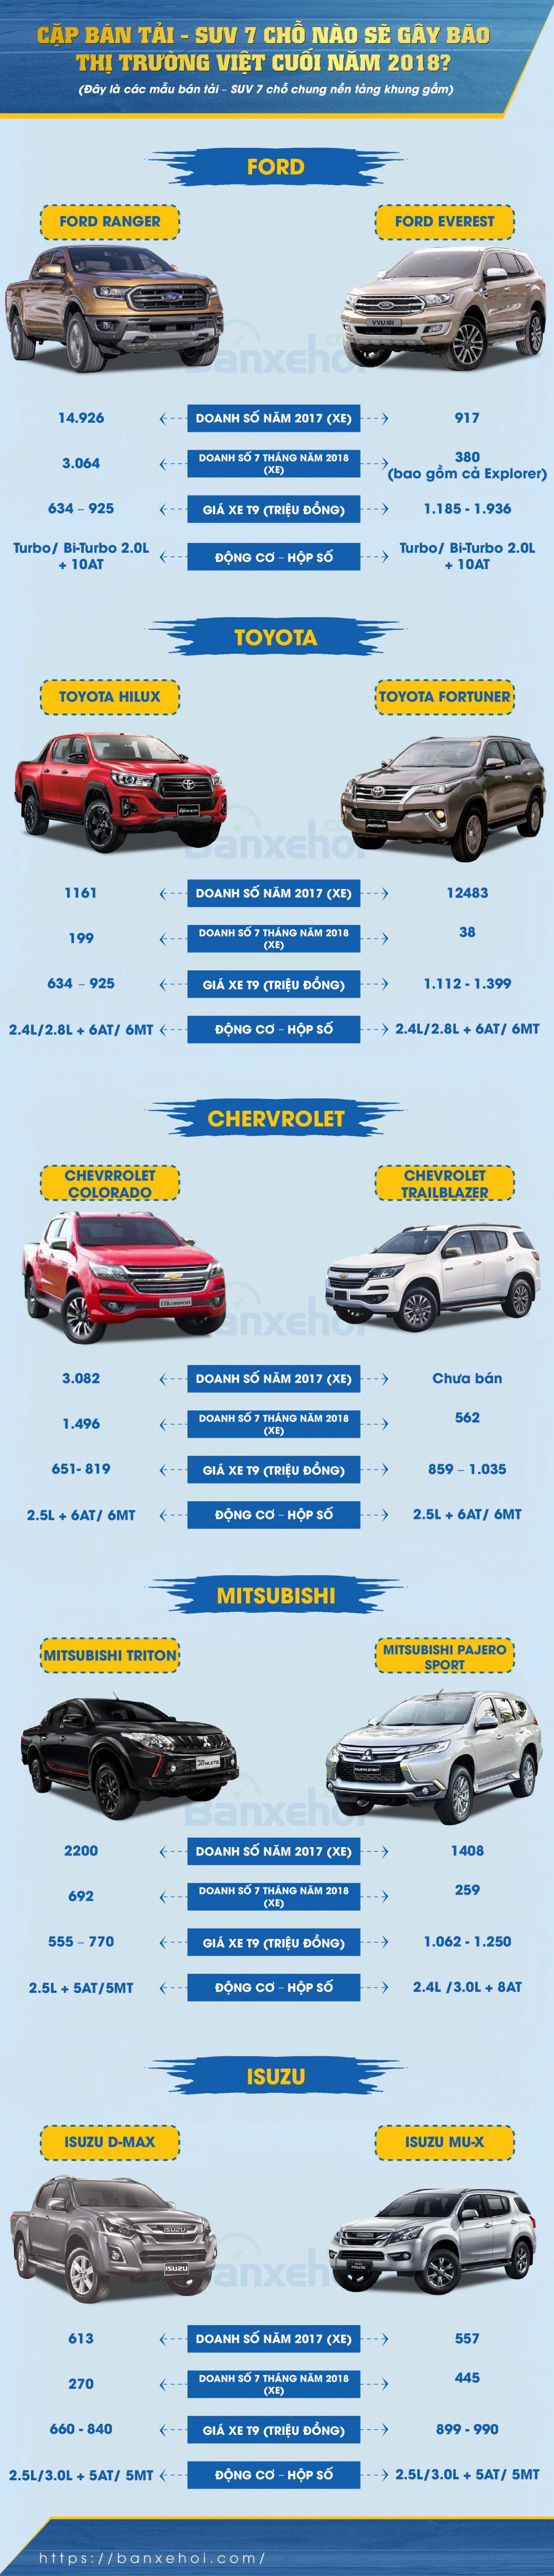 Cặp bán tải - SUV 7 chỗ nào sẽ thống lĩnh thị trường xe hơi Việt cuối năm 2018